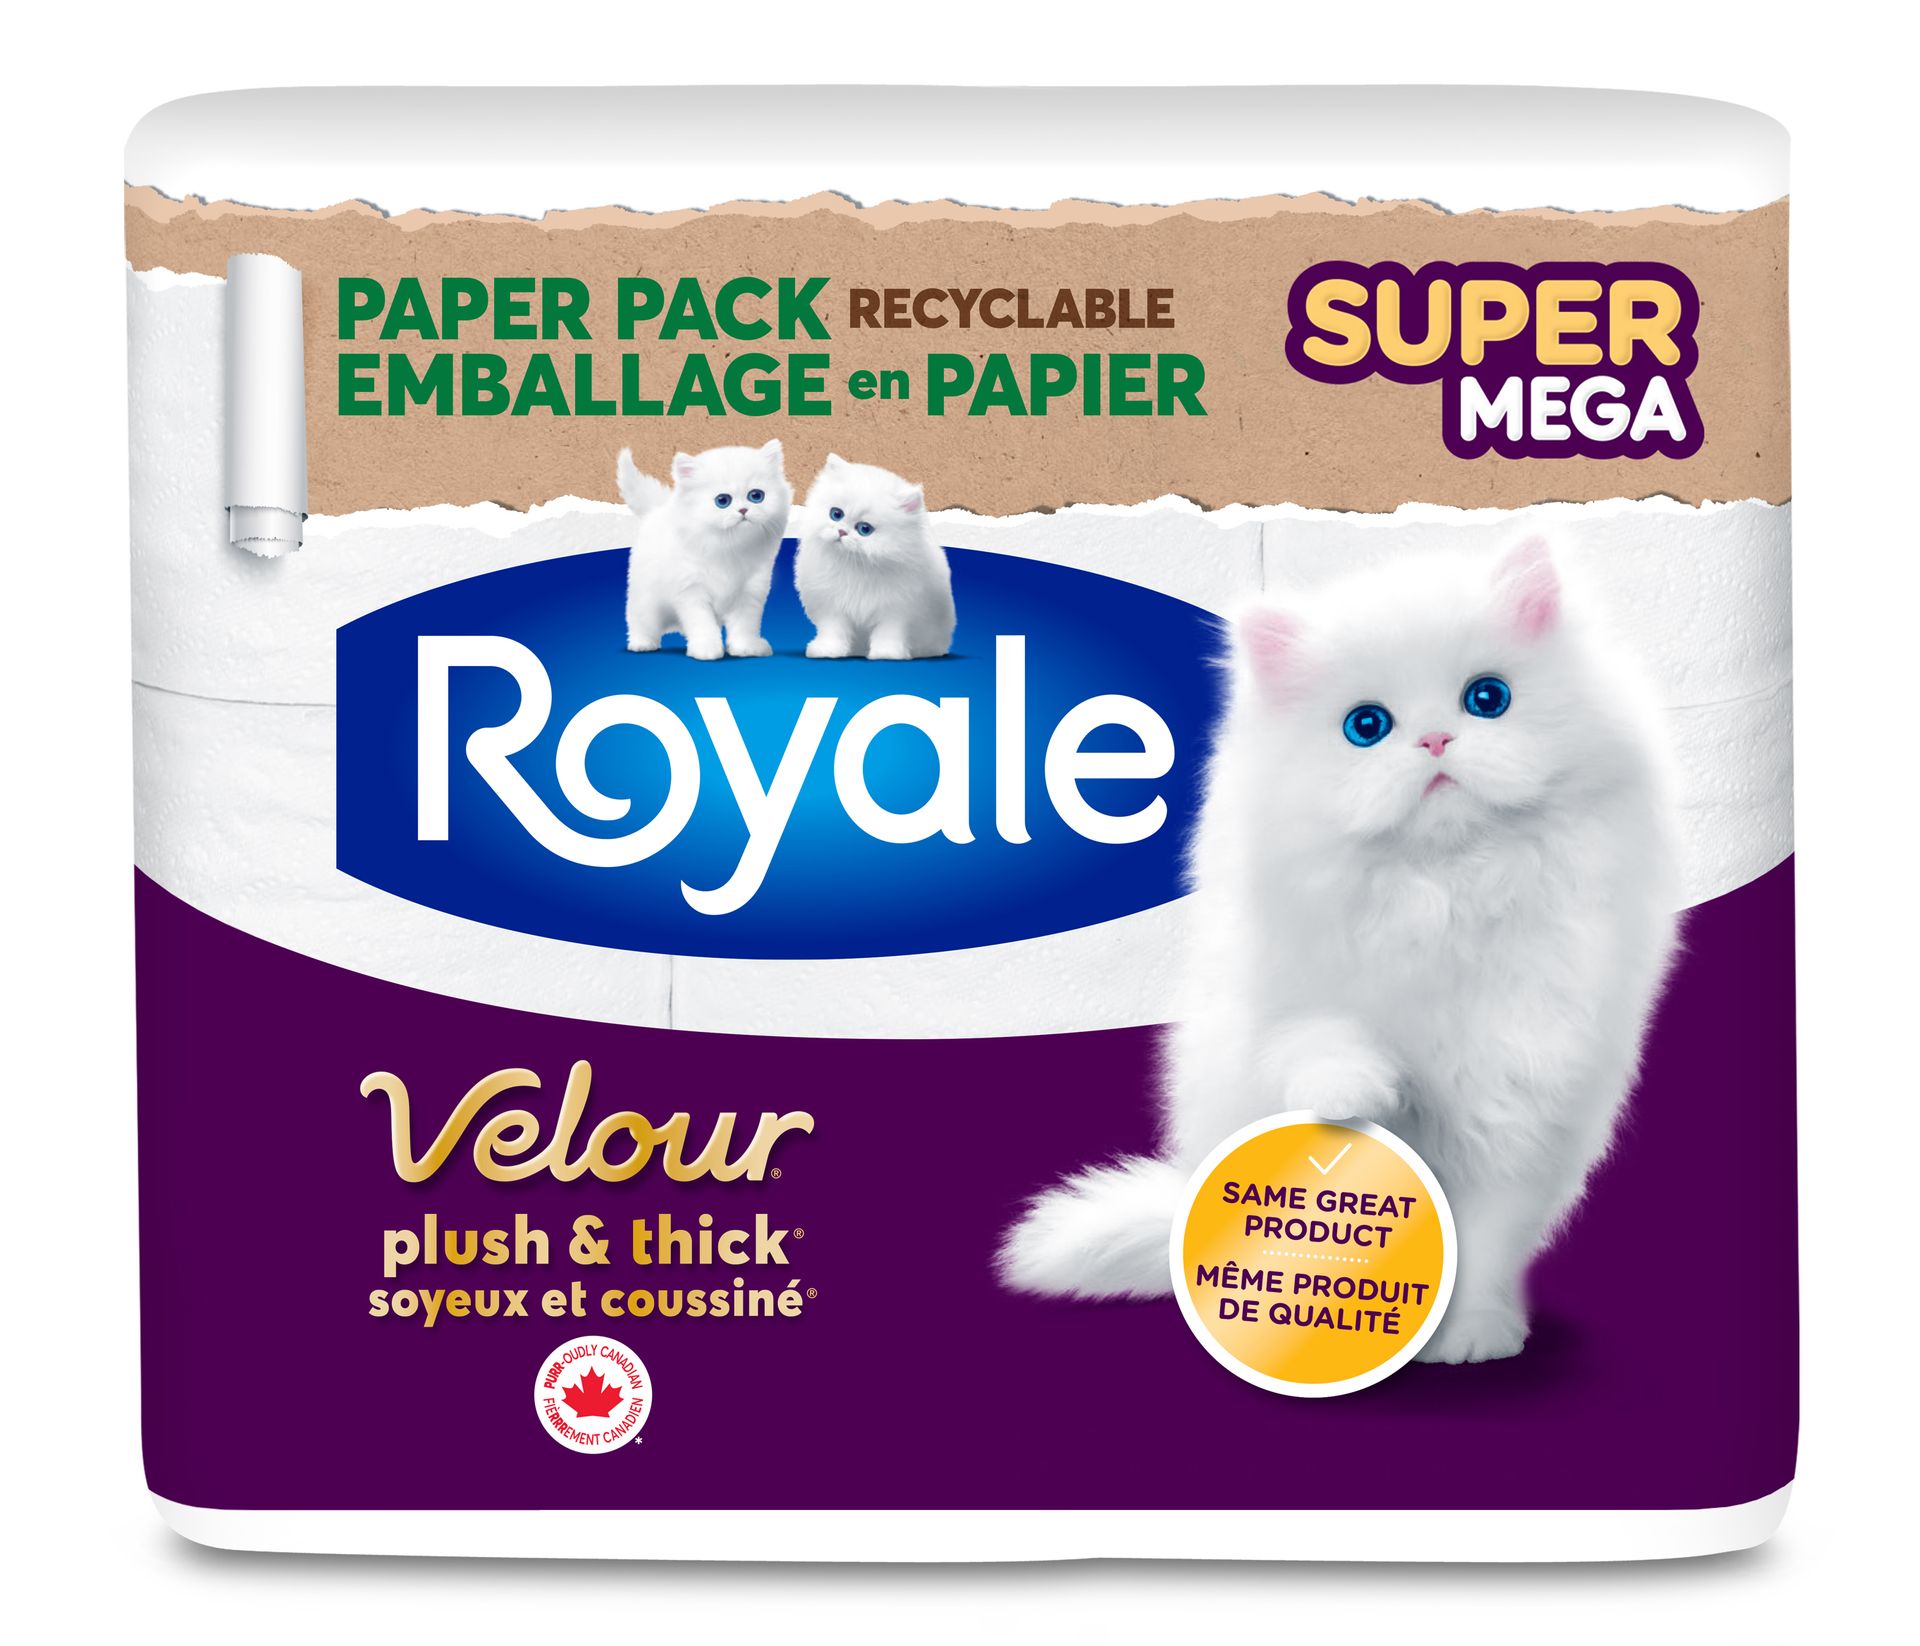 Royale Velour® Paper Pack - Super Mega Rolls